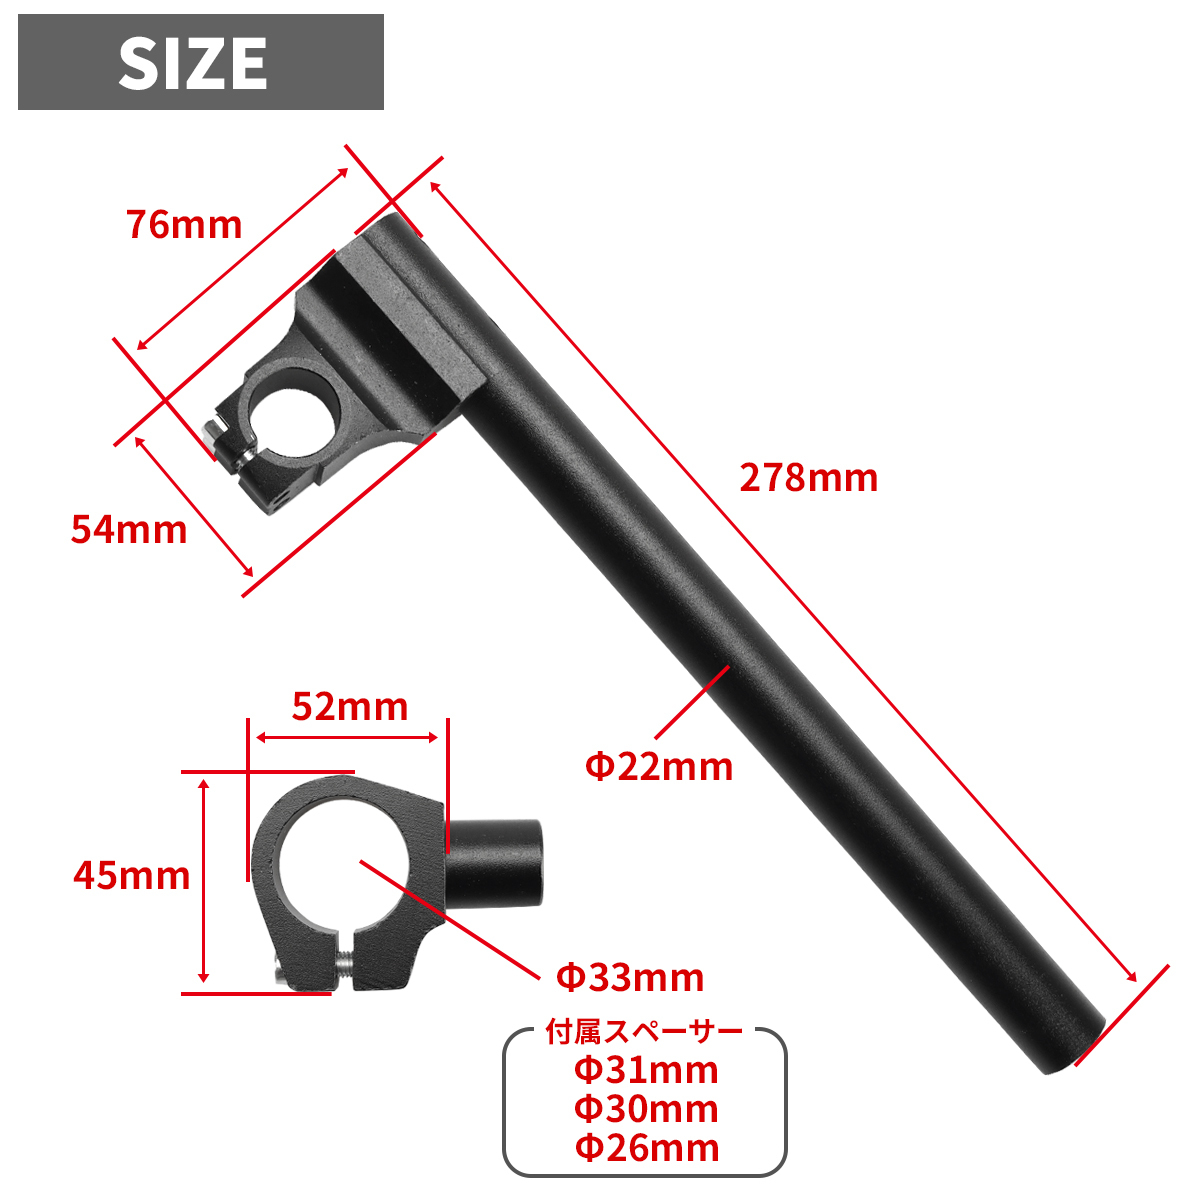  отдельная рукоятка комплект универсальный передняя вилка диаметр 33/31/30/26mm соответствует aluminium стружка (процесс образования во время фрезеровки) 